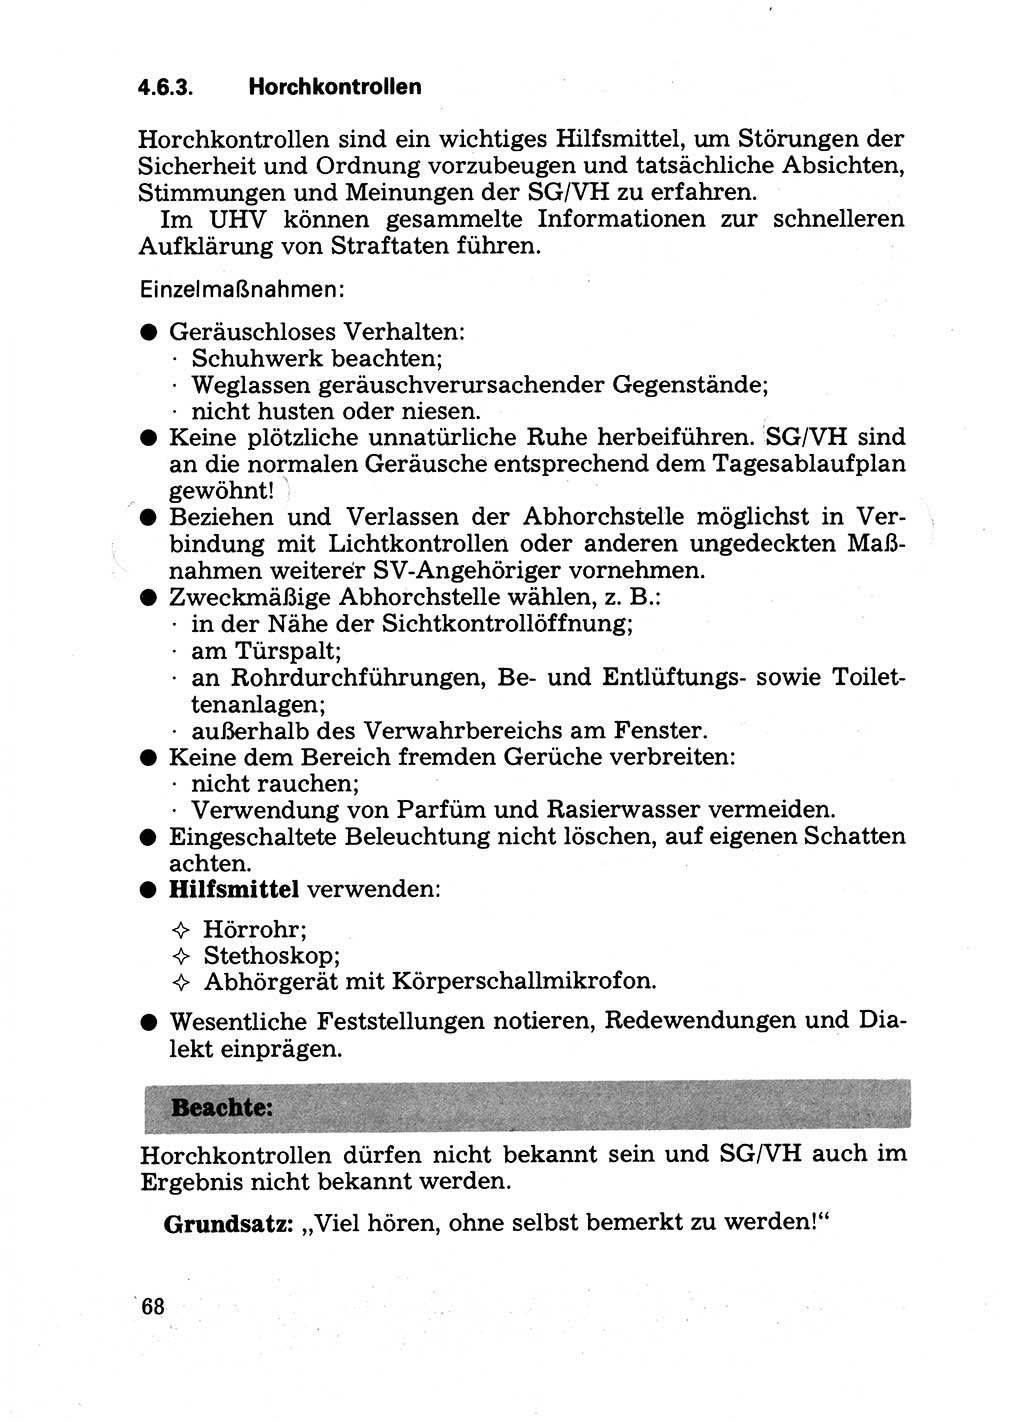 Handbuch für operative Dienste, Abteilung Strafvollzug (SV) [Ministerium des Innern (MdI) Deutsche Demokratische Republik (DDR)] 1981, Seite 68 (Hb. op. D. Abt. SV MdI DDR 1981, S. 68)